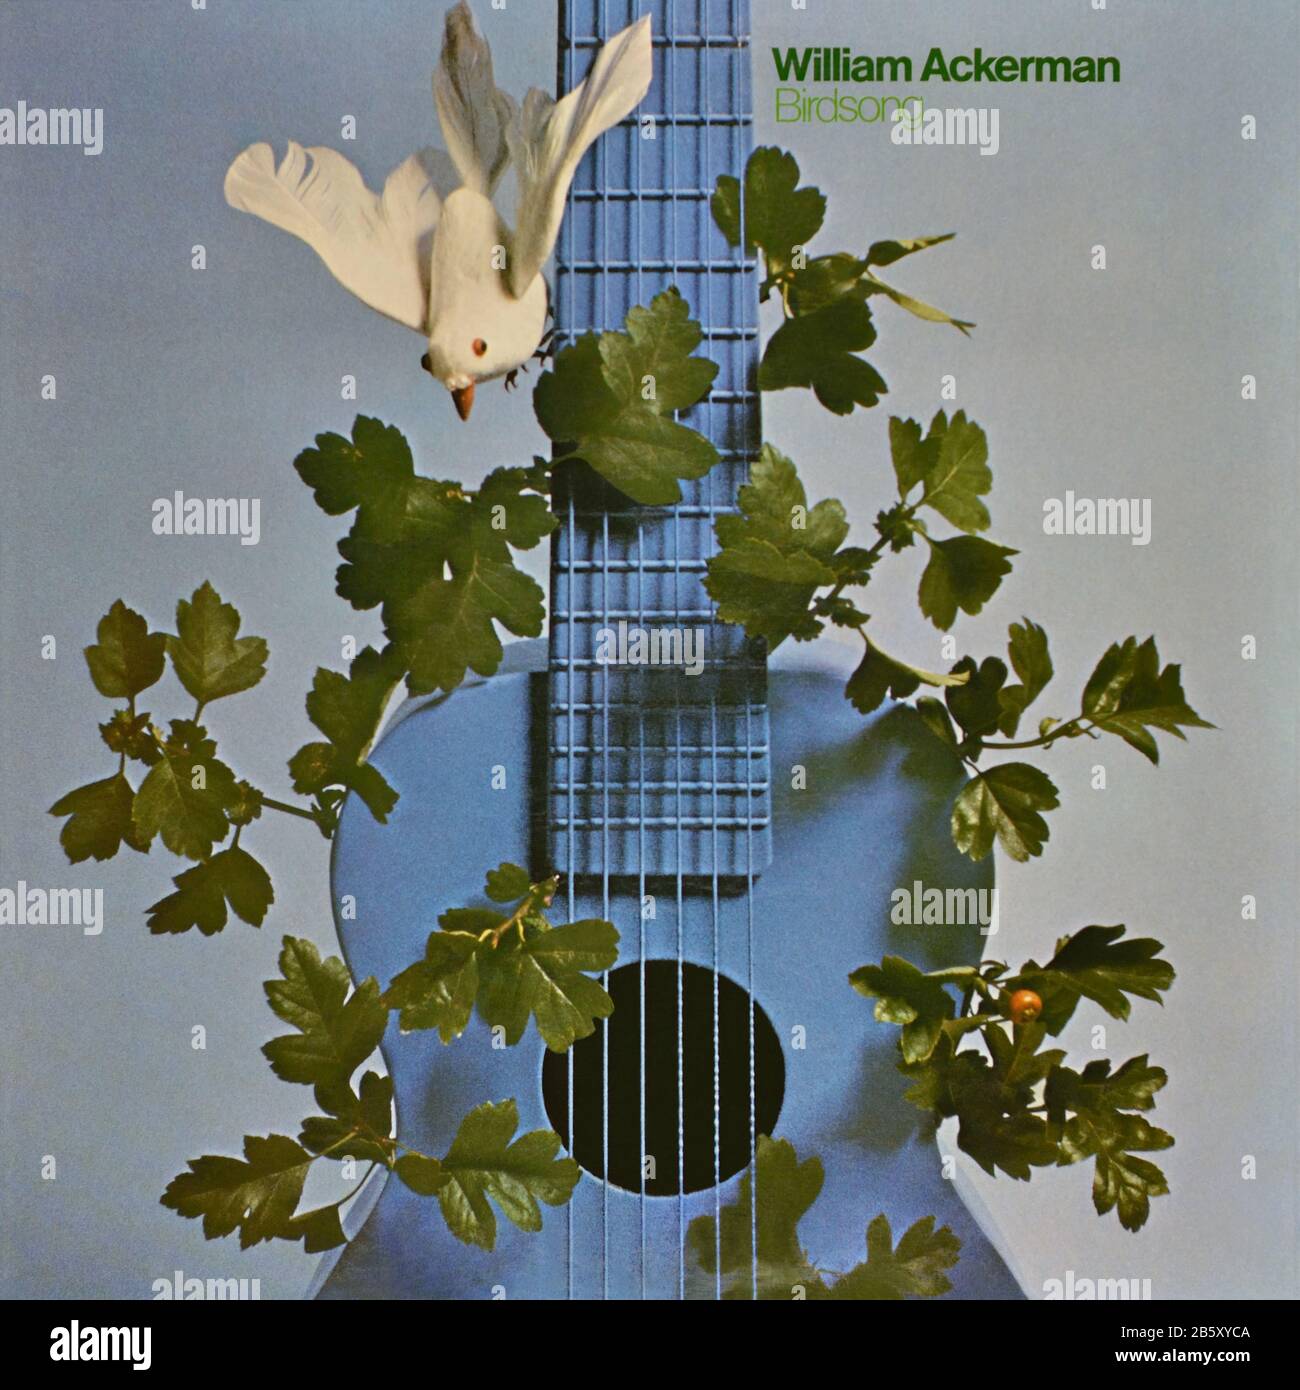 William Ackerman - original Vinyl Album Cover - Birdsong - 1978 Stockfoto